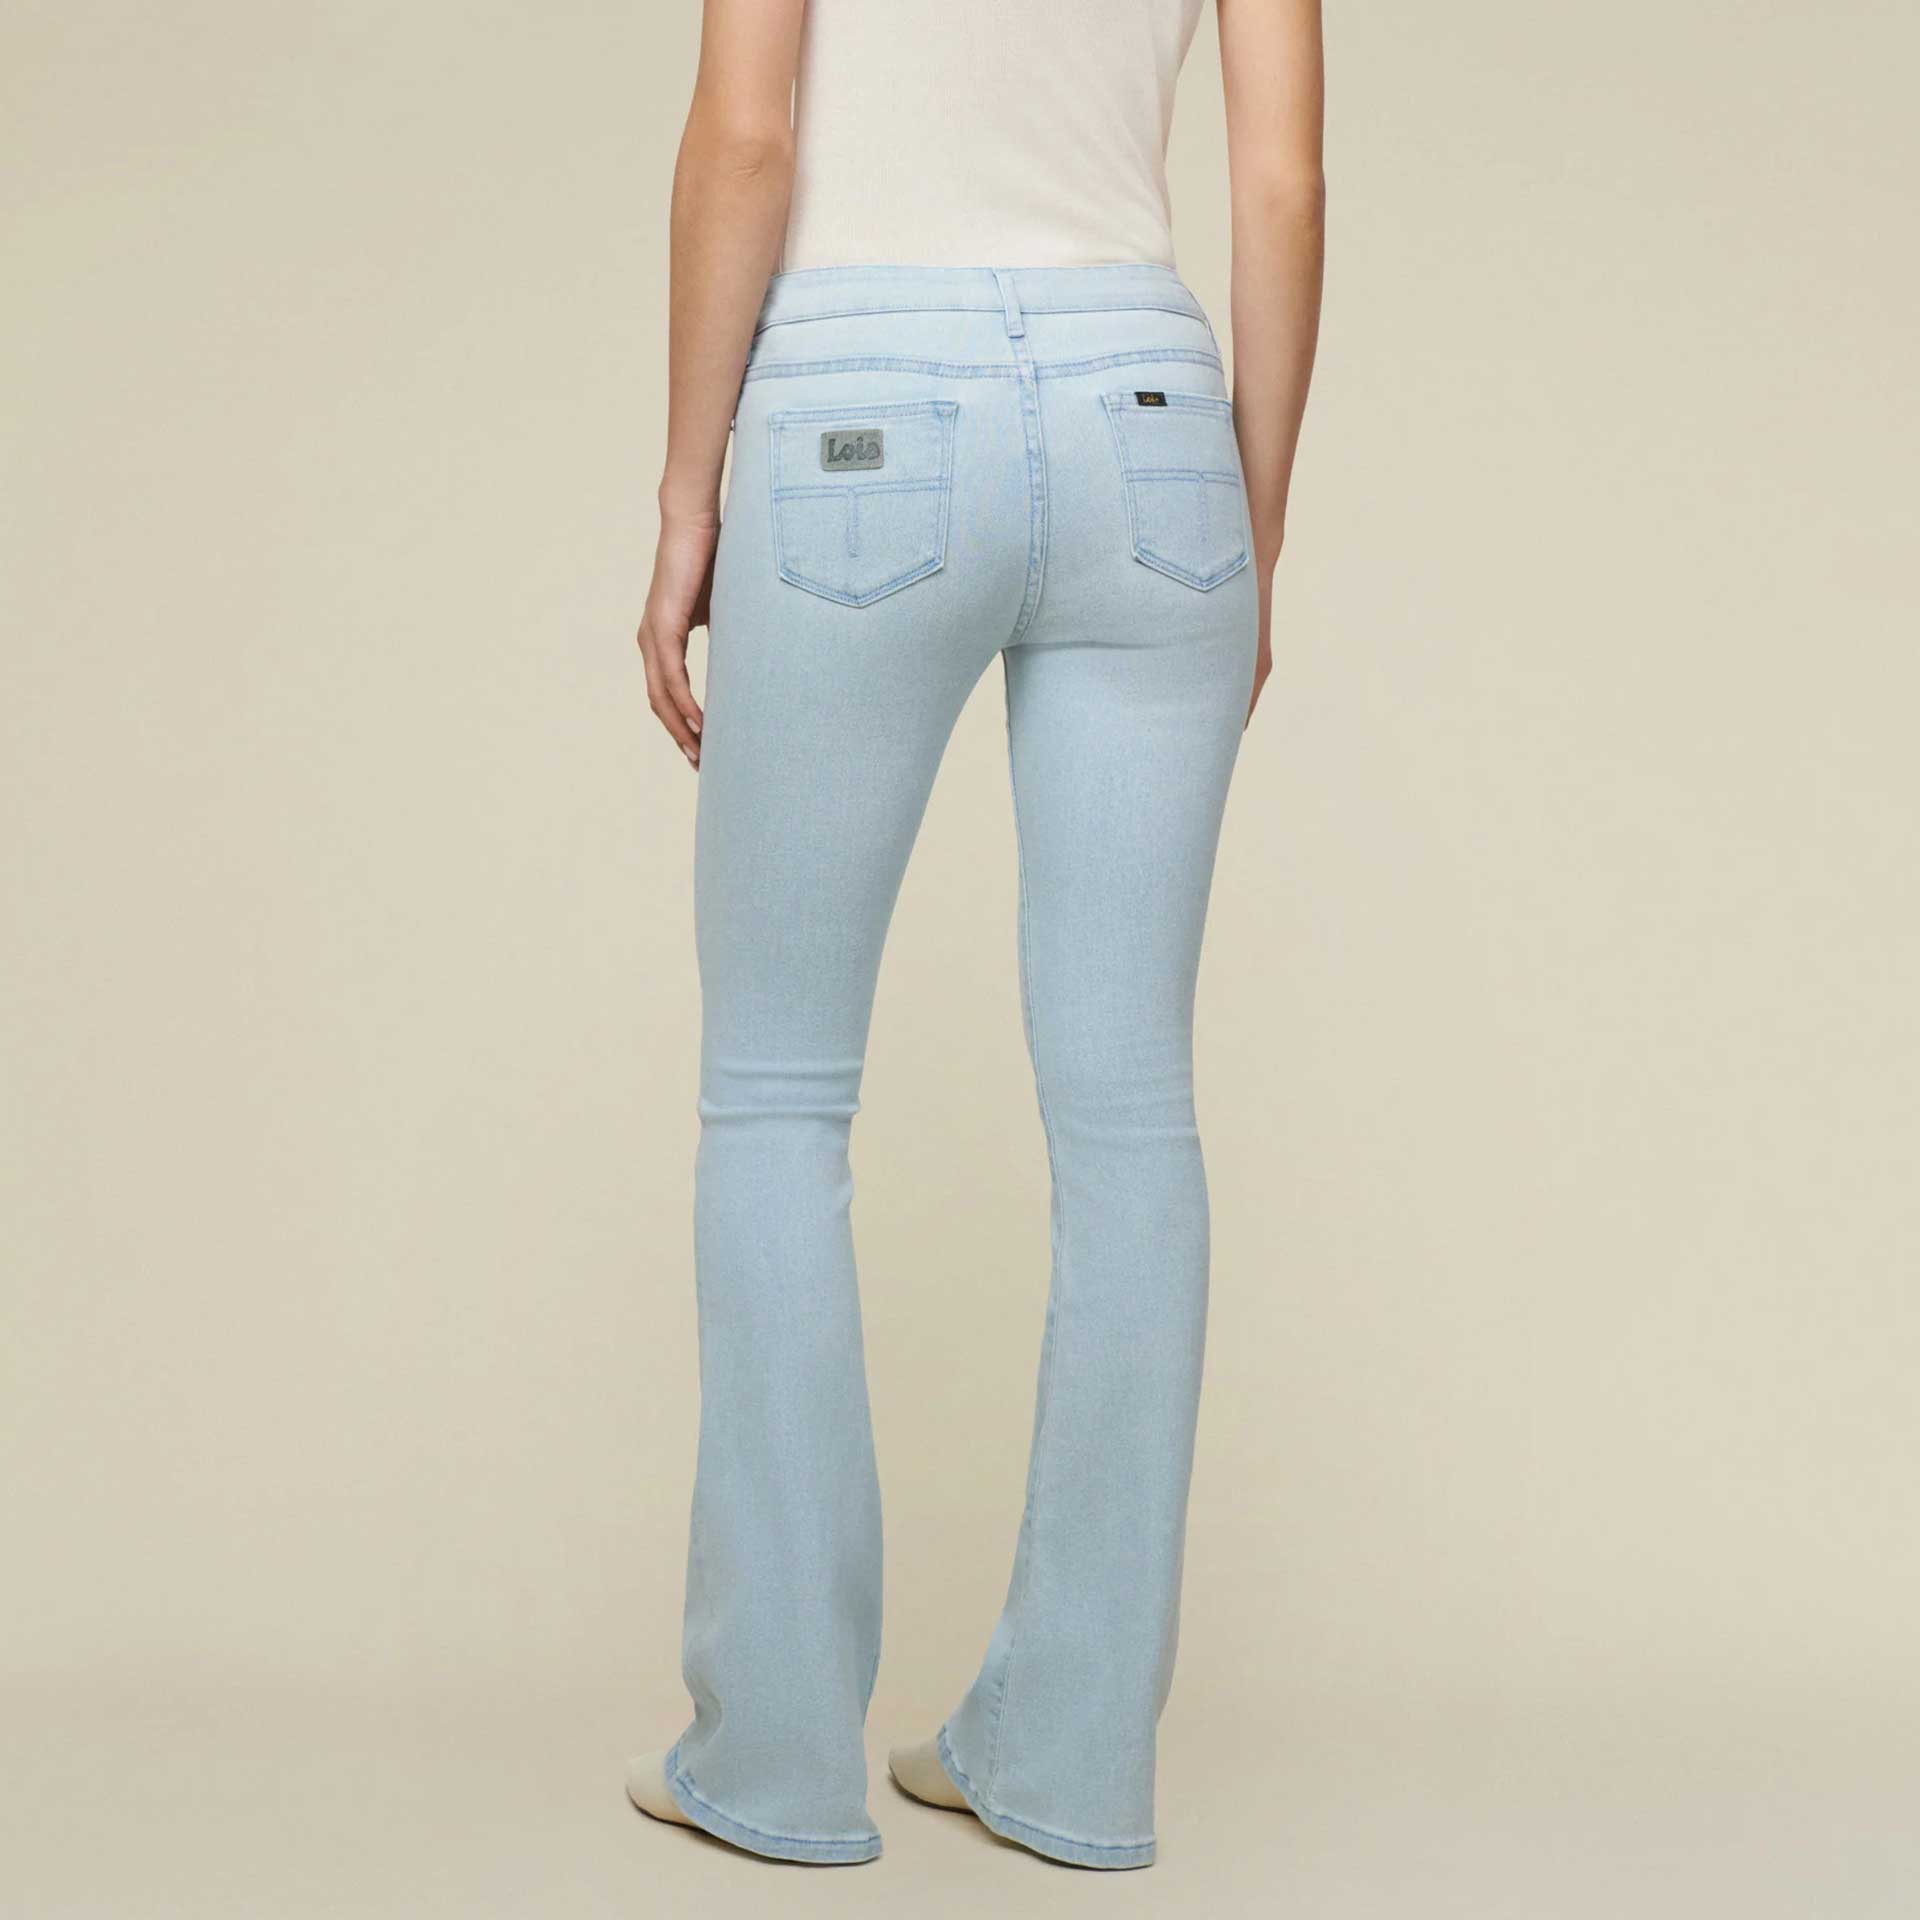 Lois jeans Jeans Raval 16 2